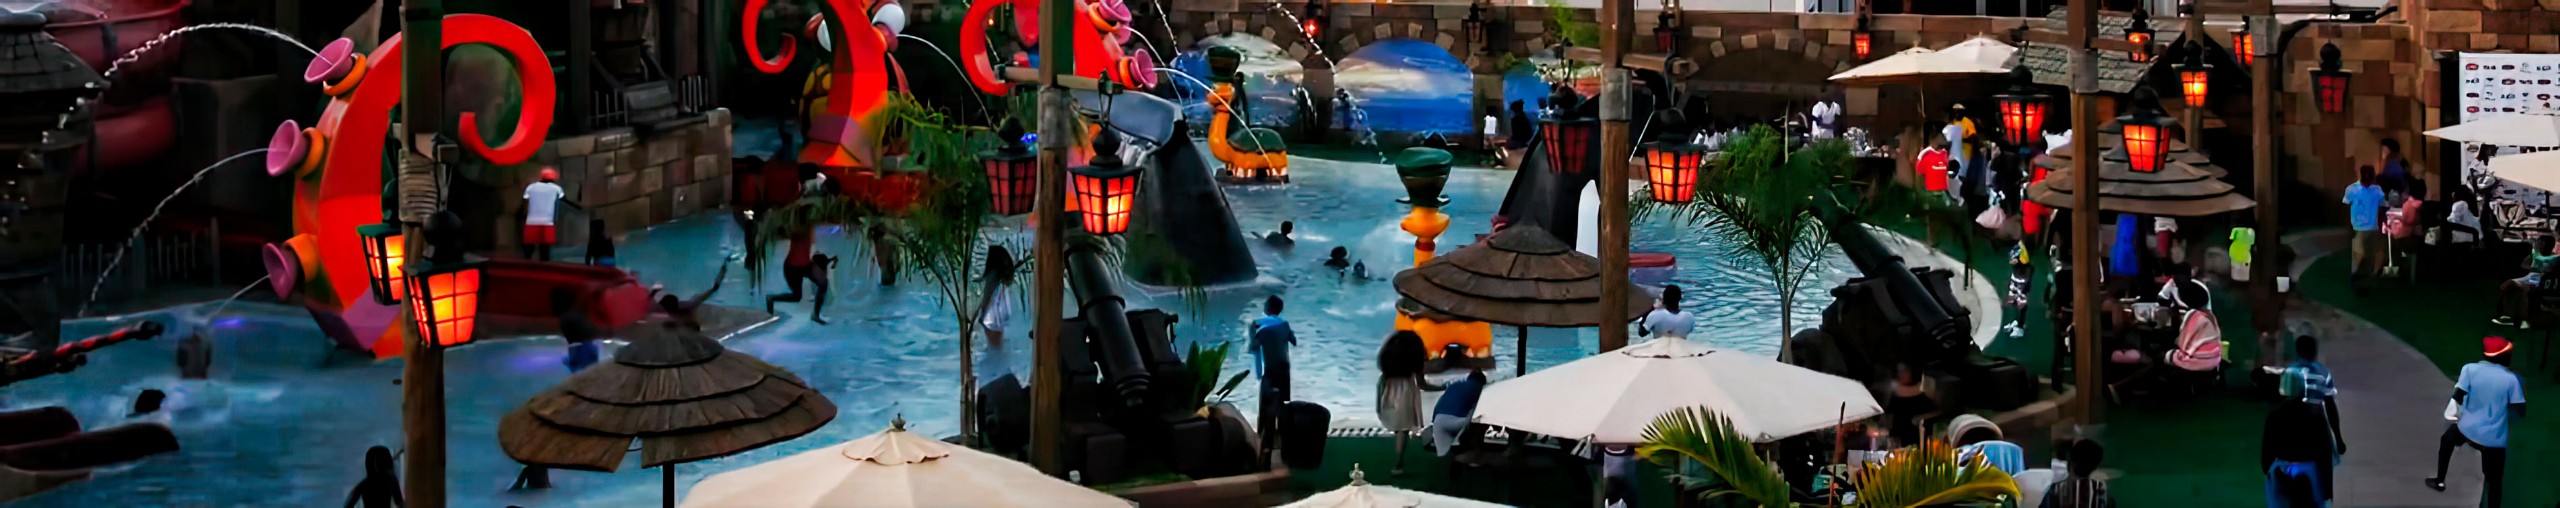 Projeto de piscina com tema estilo pirata, com barcos piratas, escorregadores e pedras artificiais